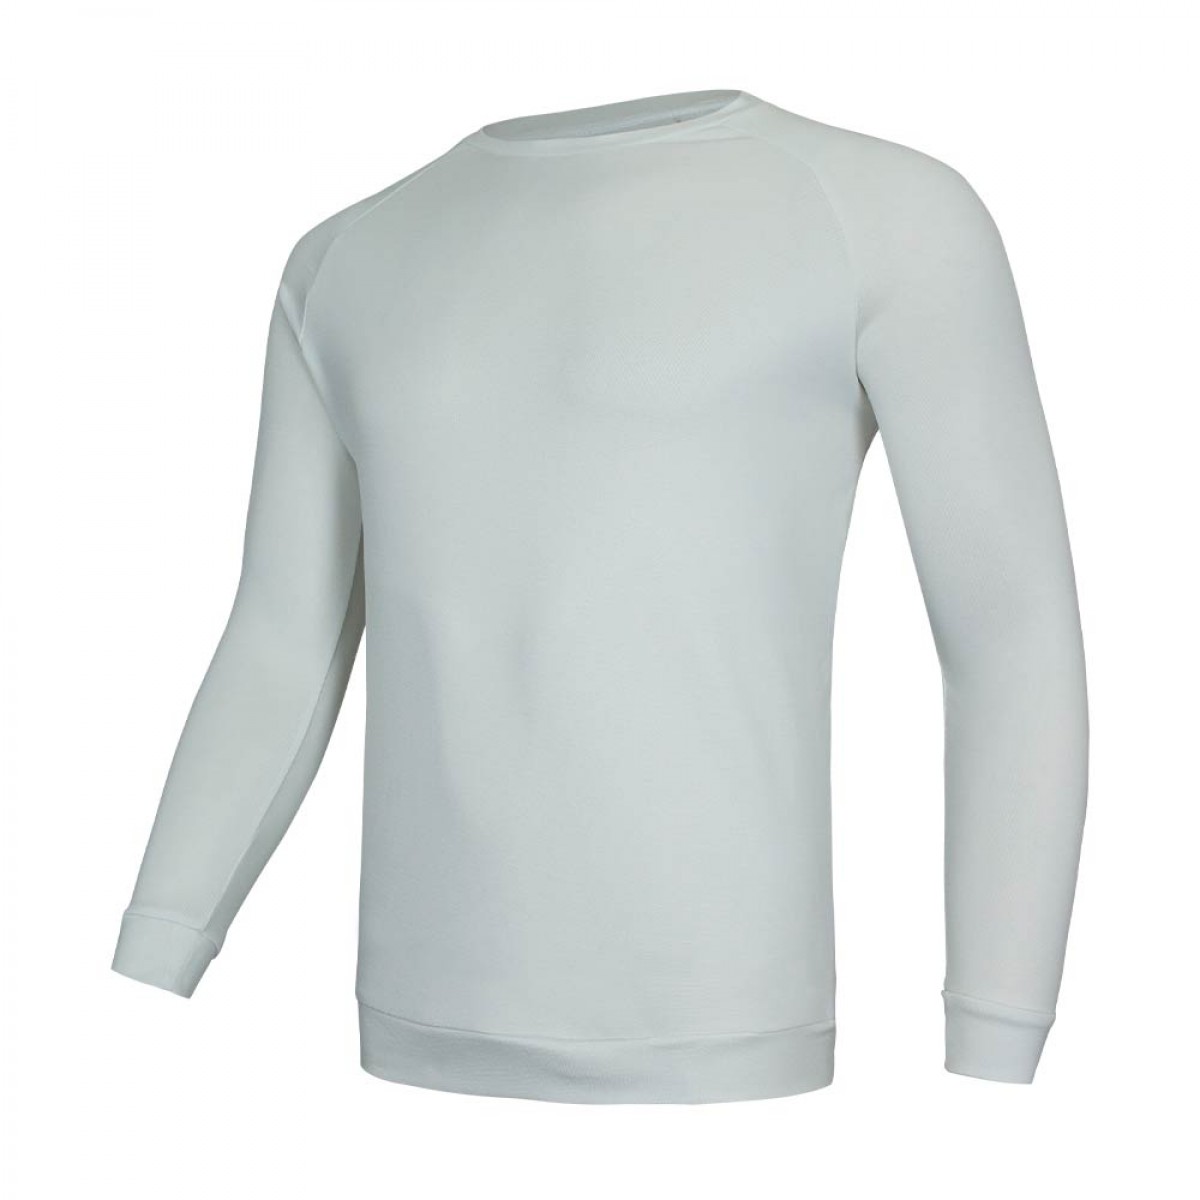 sweat-shirt-with-rib-kss15171